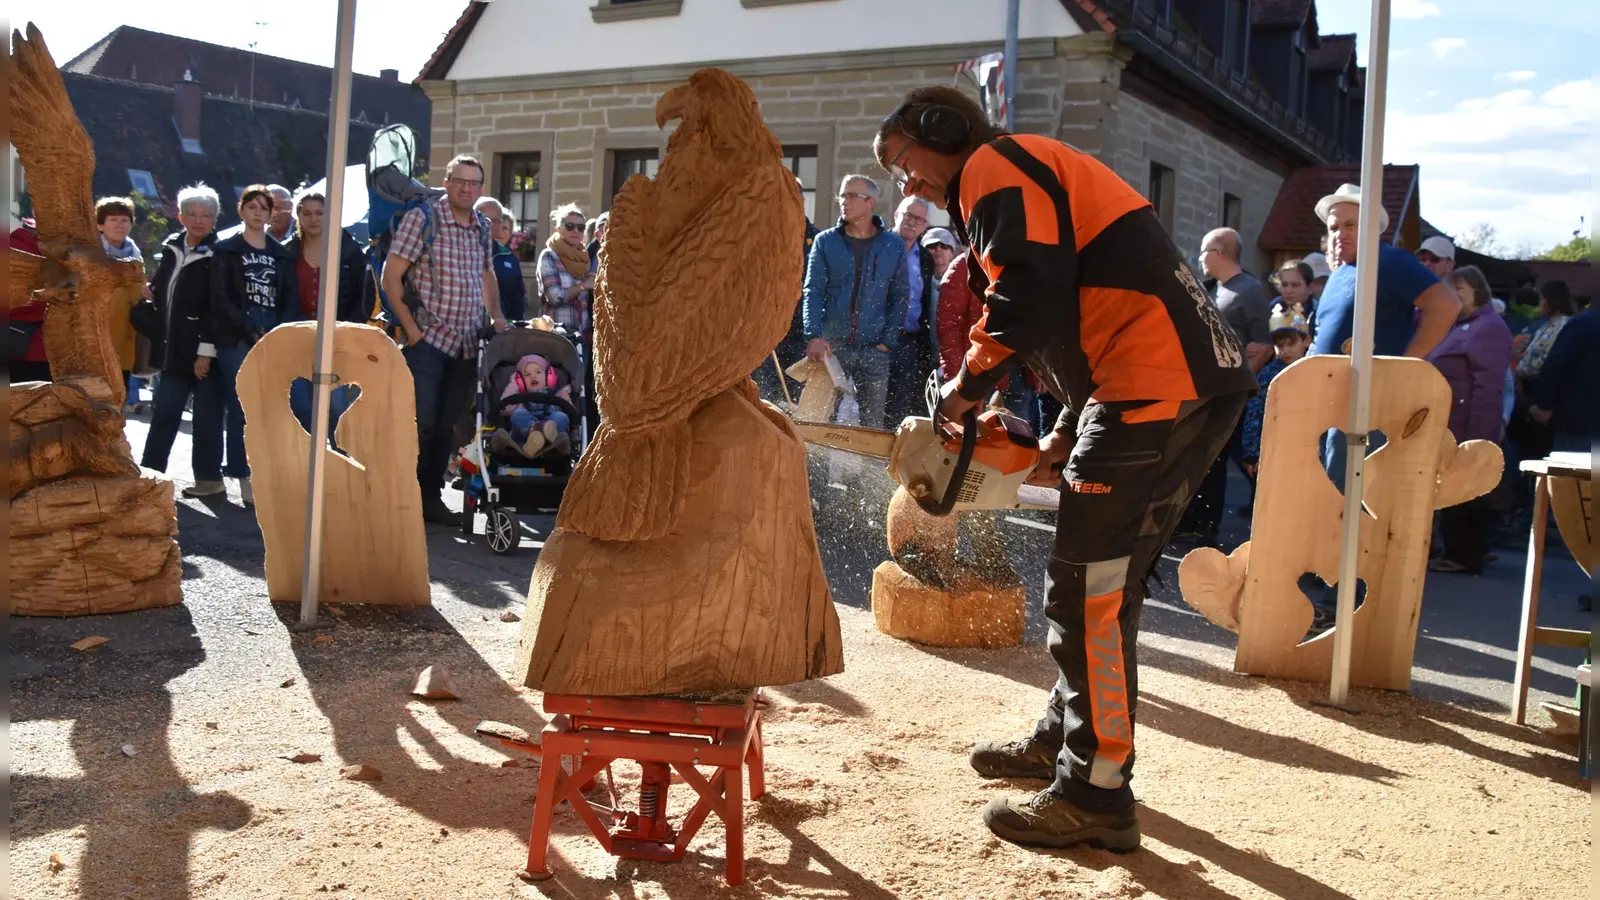 Mit Verkaufsständen und Vorführungen war der Scheinfelder Holztag auch bei seiner vorerst letzten Auflage 2019 ein Publikumsmagnet. Daran will die Stadt – nach zwei Corona-Pausen – heuer wieder anknüpfen. (Foto: Andreas Reum)